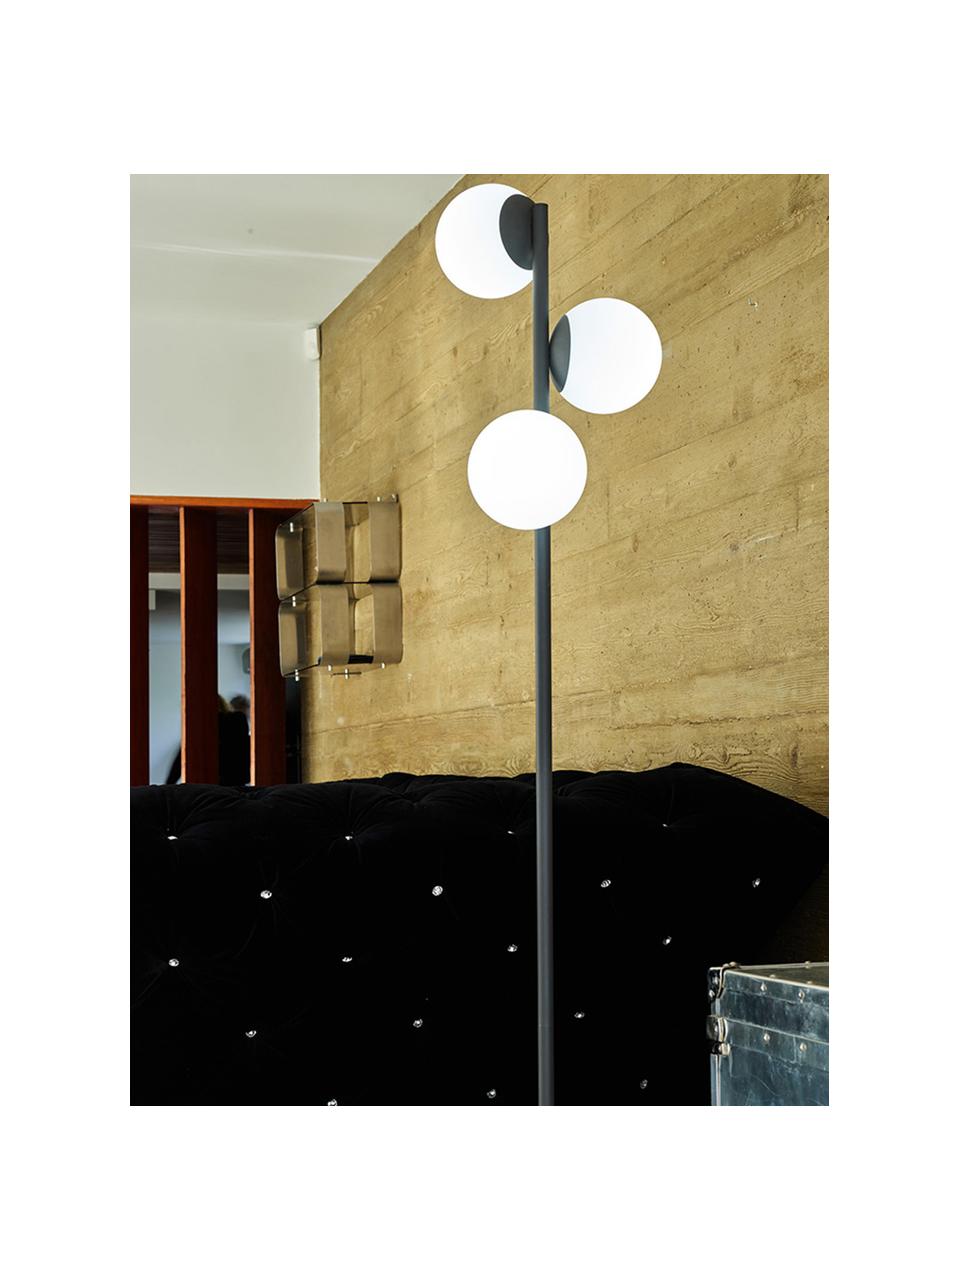 Dimbare outdoor vloerlamp Globy met stekker, Lampvoet: gecoat aluminium, Zwart, wit, Ø 42 x H 175 cm